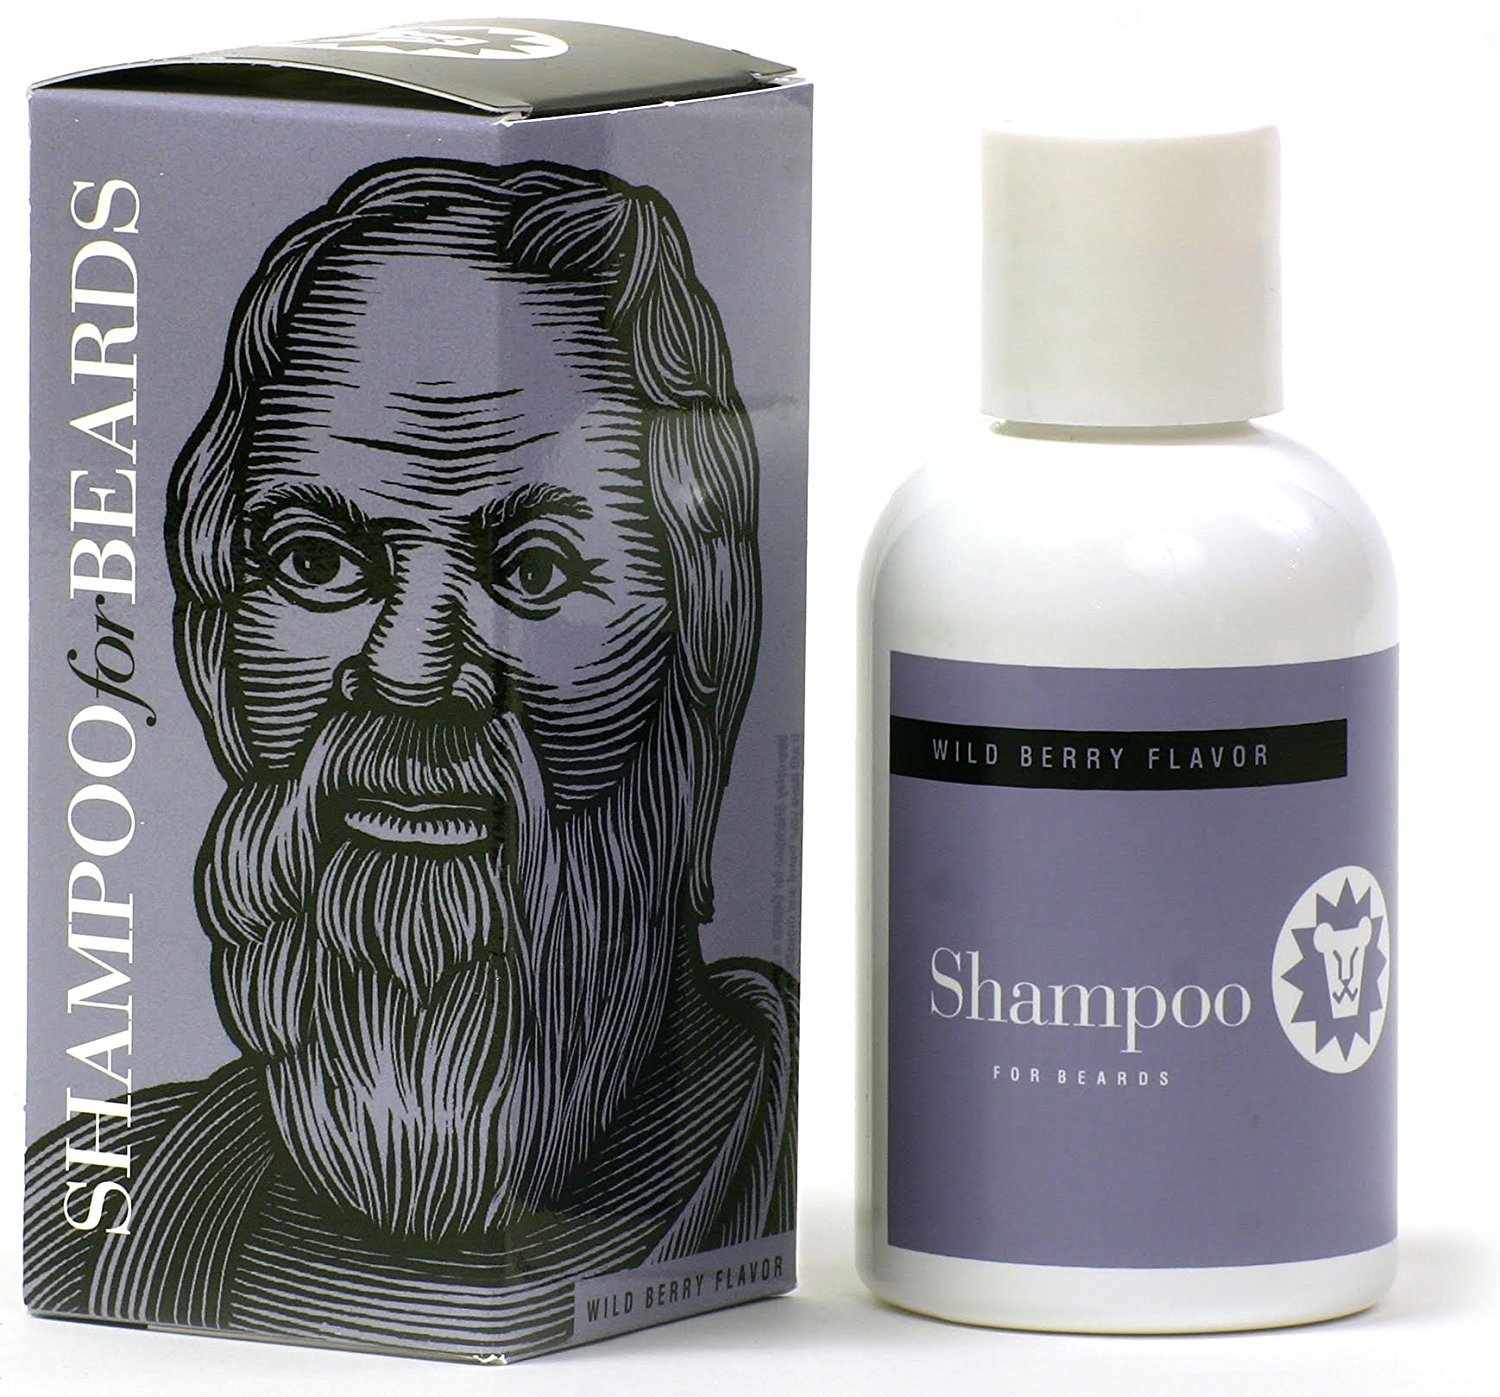 Beardsley Shampoo - Sjampo til Skjegg